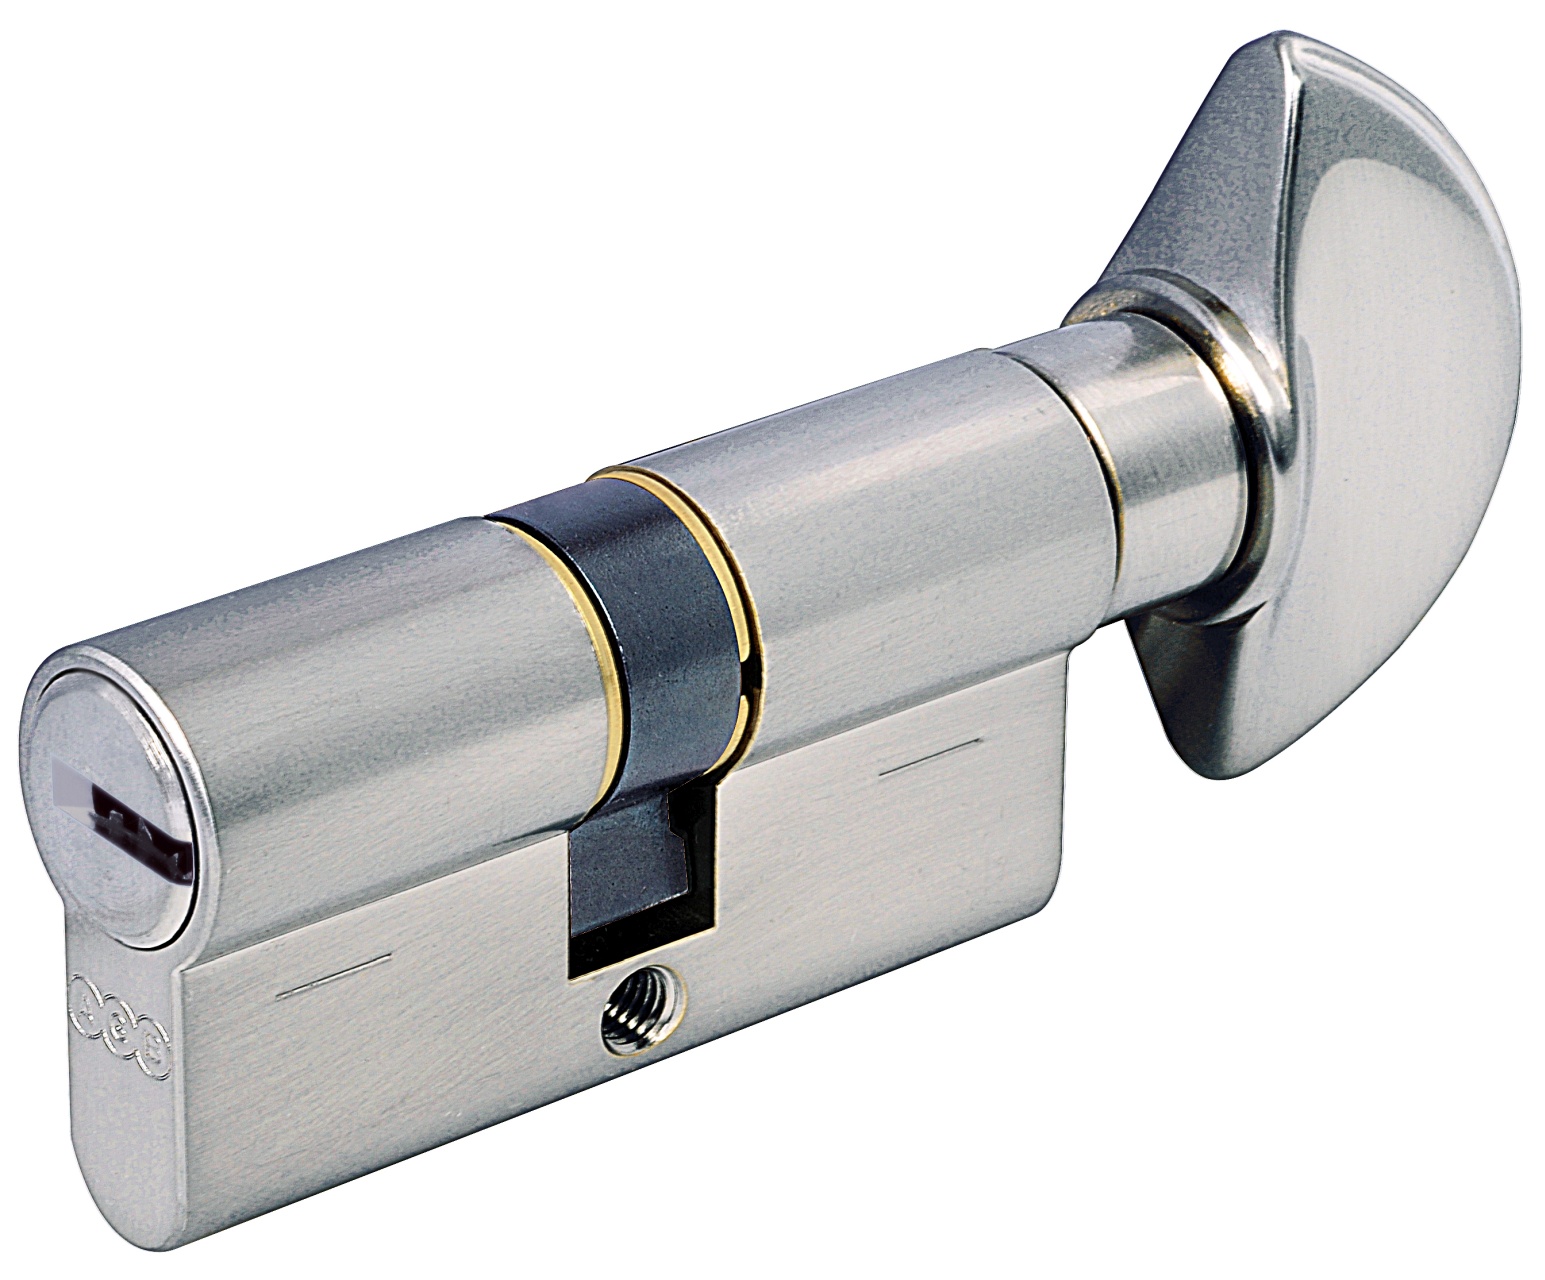 AGB -  Cilindro SCUDO 5000 PS frizionato anti bamping con chiave e pomolo - col. NICHELATO OPACO - lunghezza 75 - misura P-30-10-35